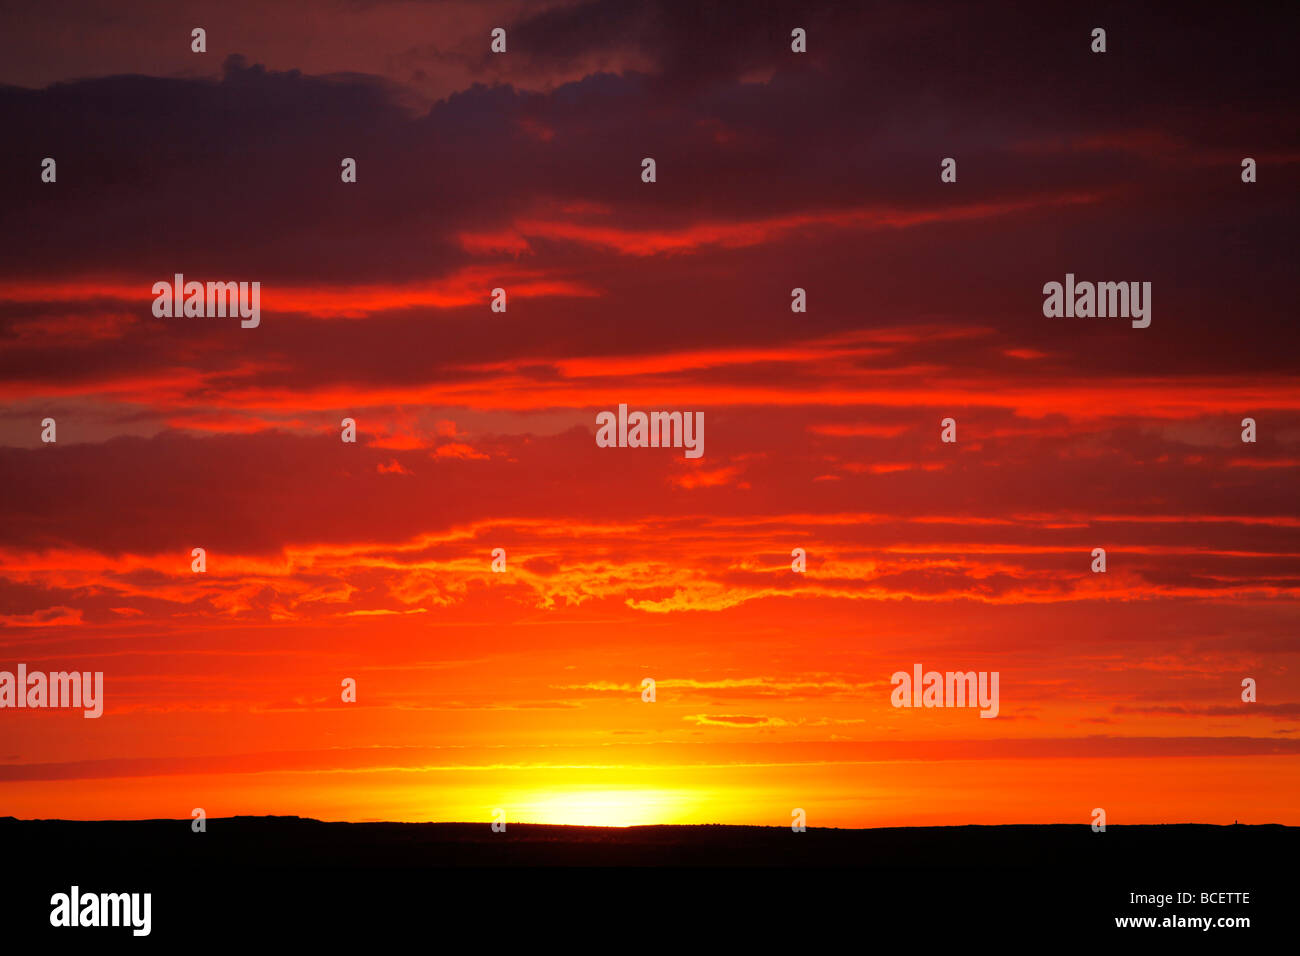 Midnight sun, Iceland Stock Photo